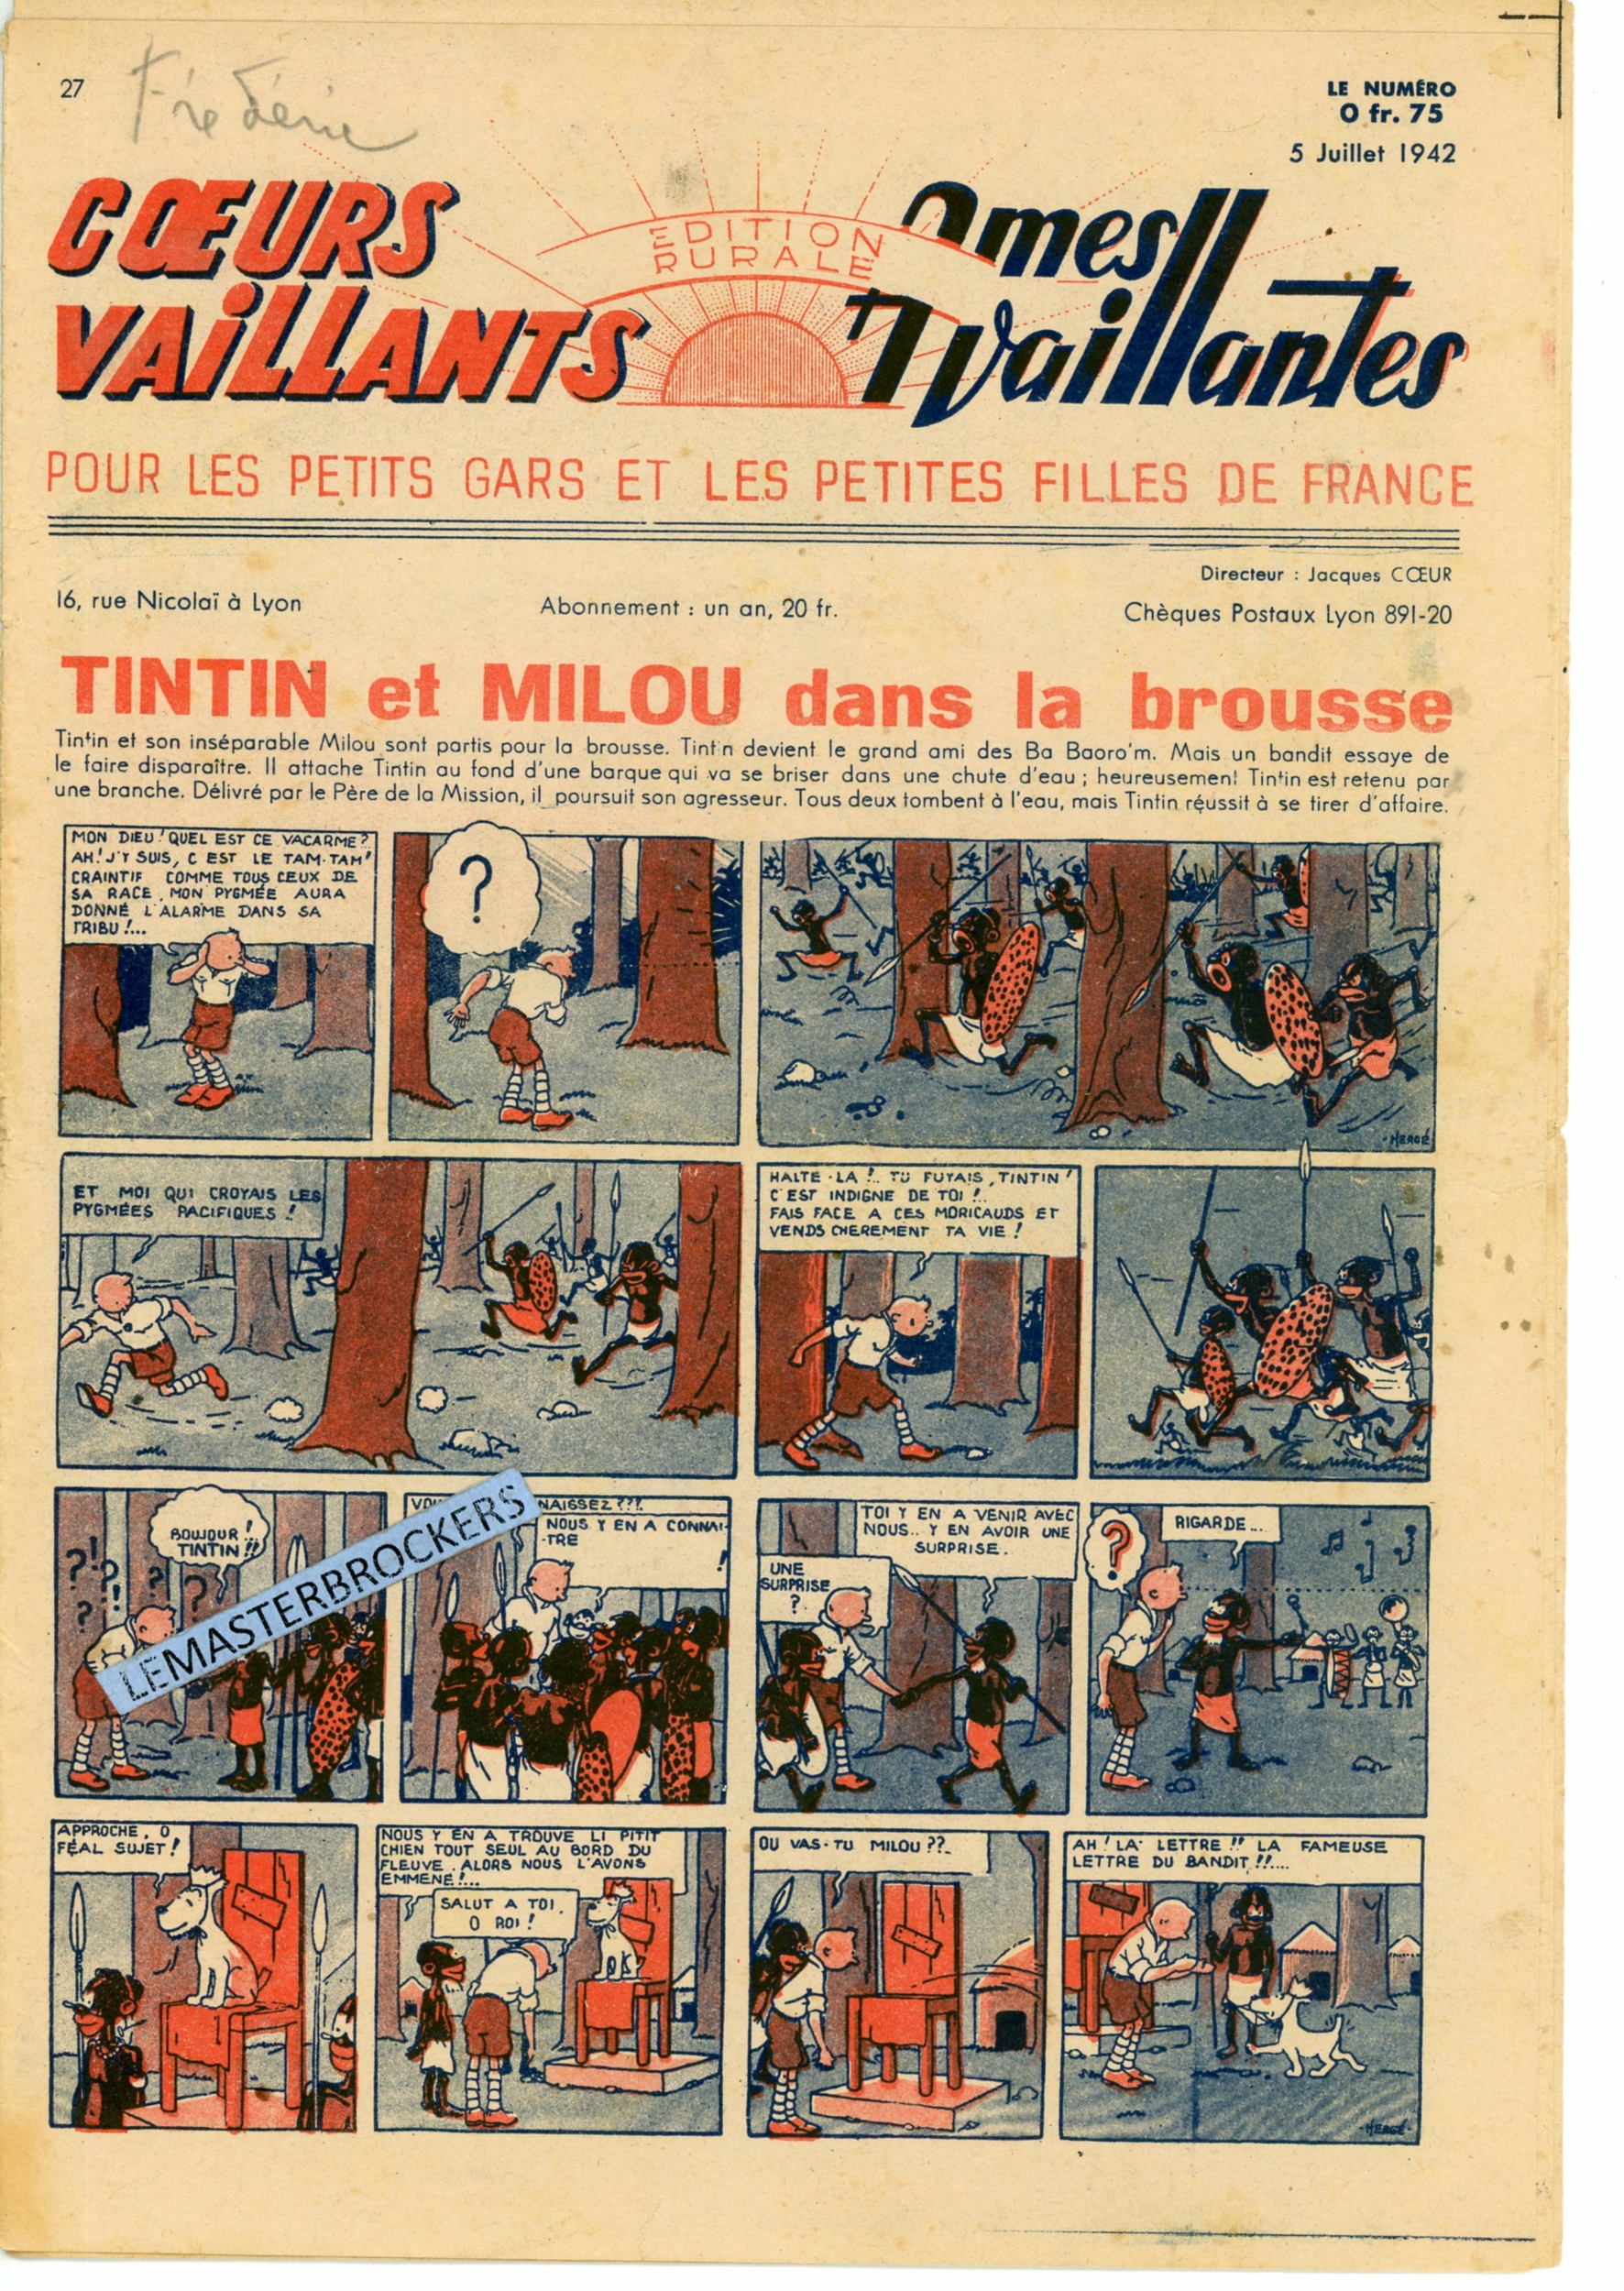 TINTIN ET MILOU DANS LA BROUSSE 1942 COEURS VAILLANTS 27  LEMASTERBROCKERS